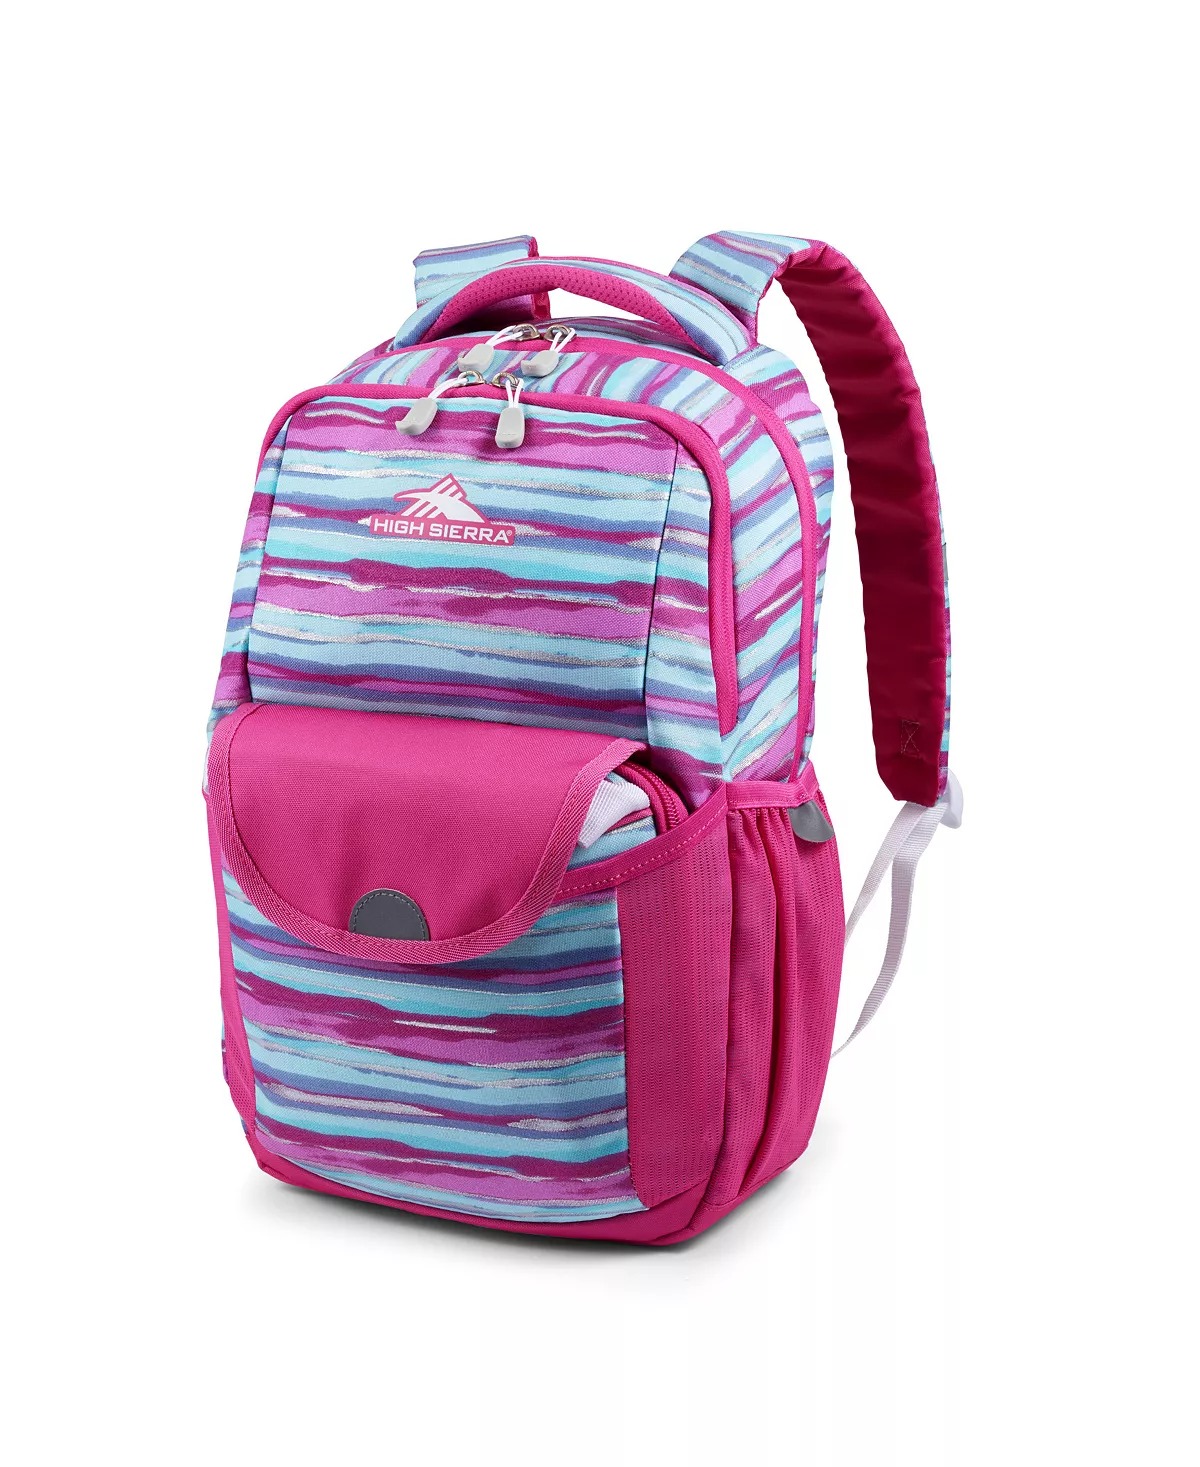 ihocon: High Sierra Swoop SG Backpack 背包-多色可选